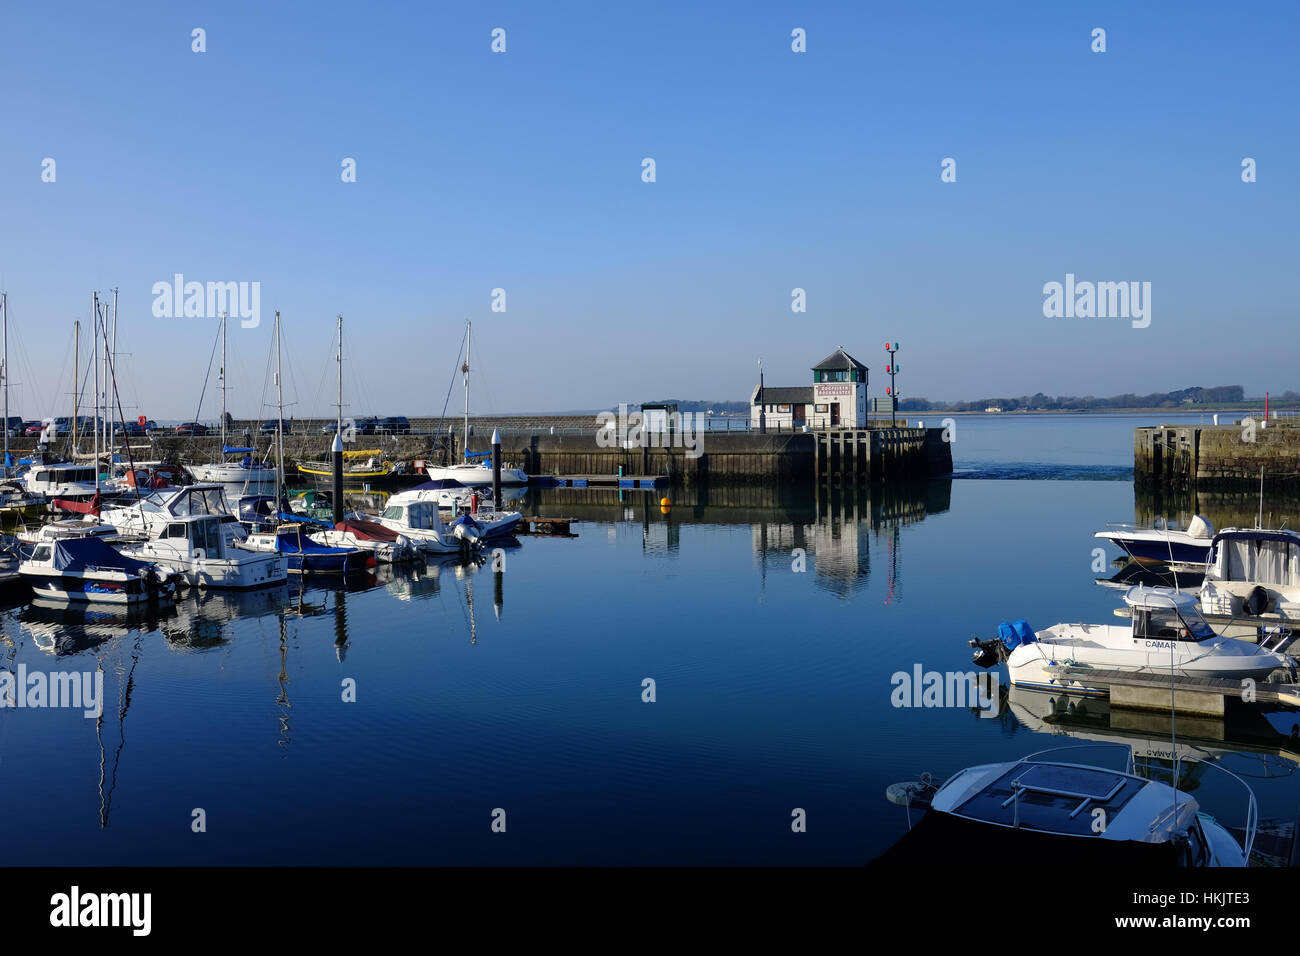 Victoria Quay and marina in Caernarfon, Wales Stock Photo